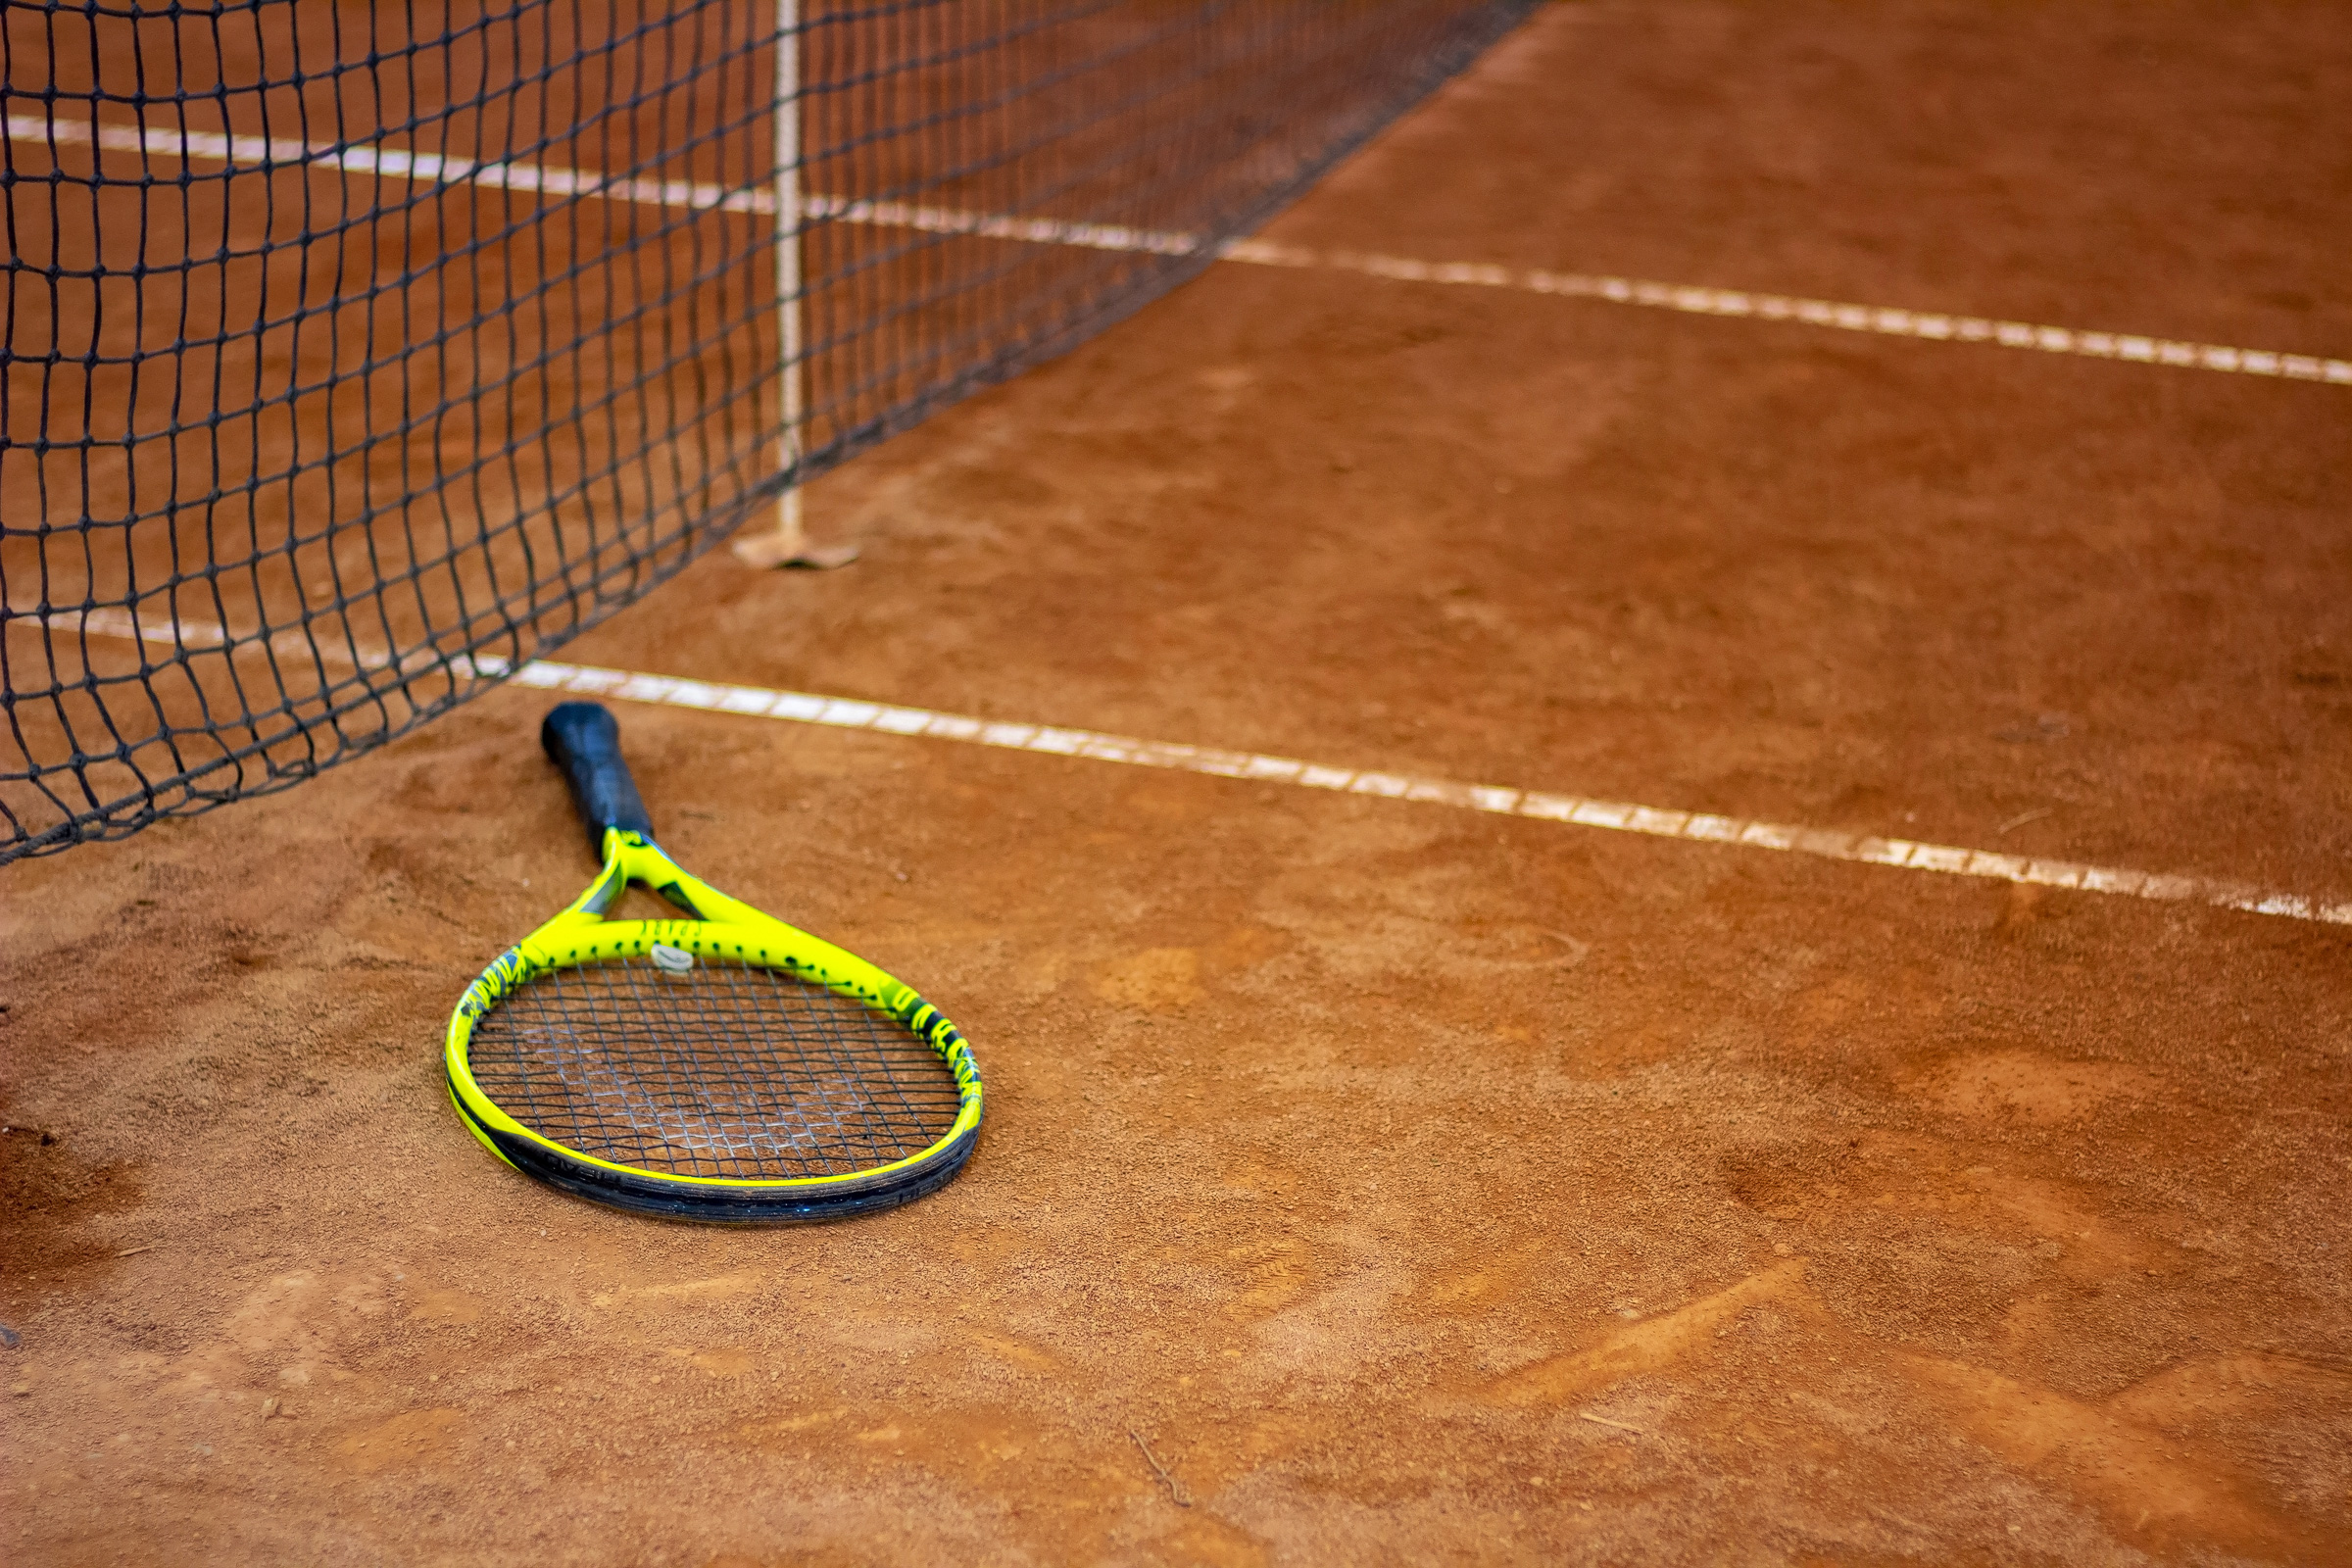 Tennis racket on a tennis court